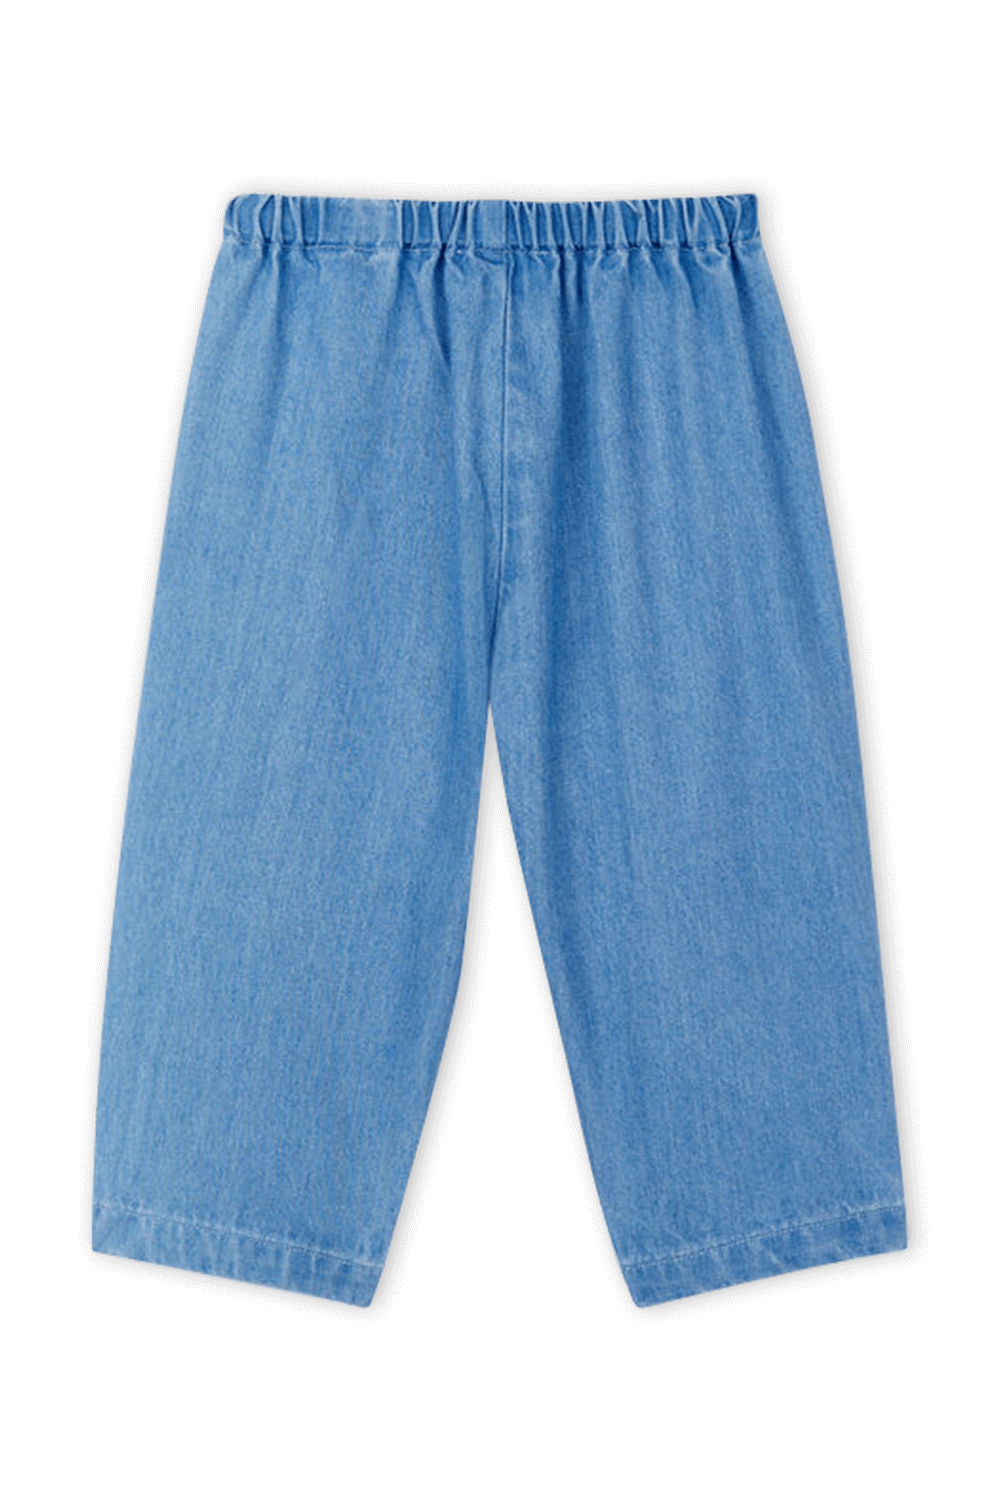 מכנסיים בגוון כחול ג'ינס - גילאי 18-36 חודשים PETIT BATEAU